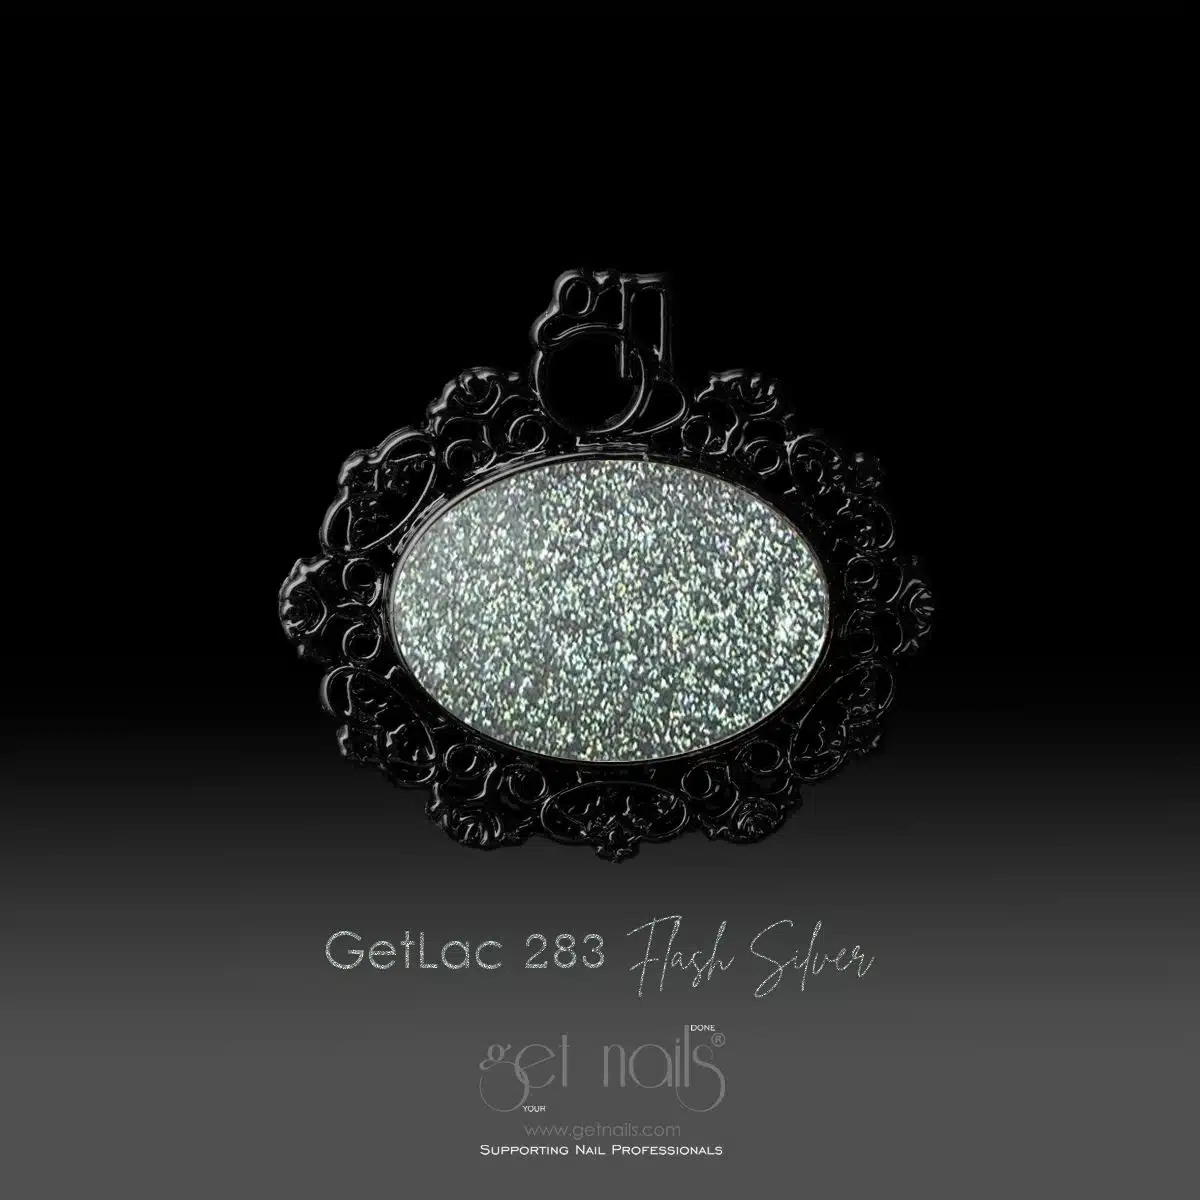 GetLac 283 Flash Silver 15g